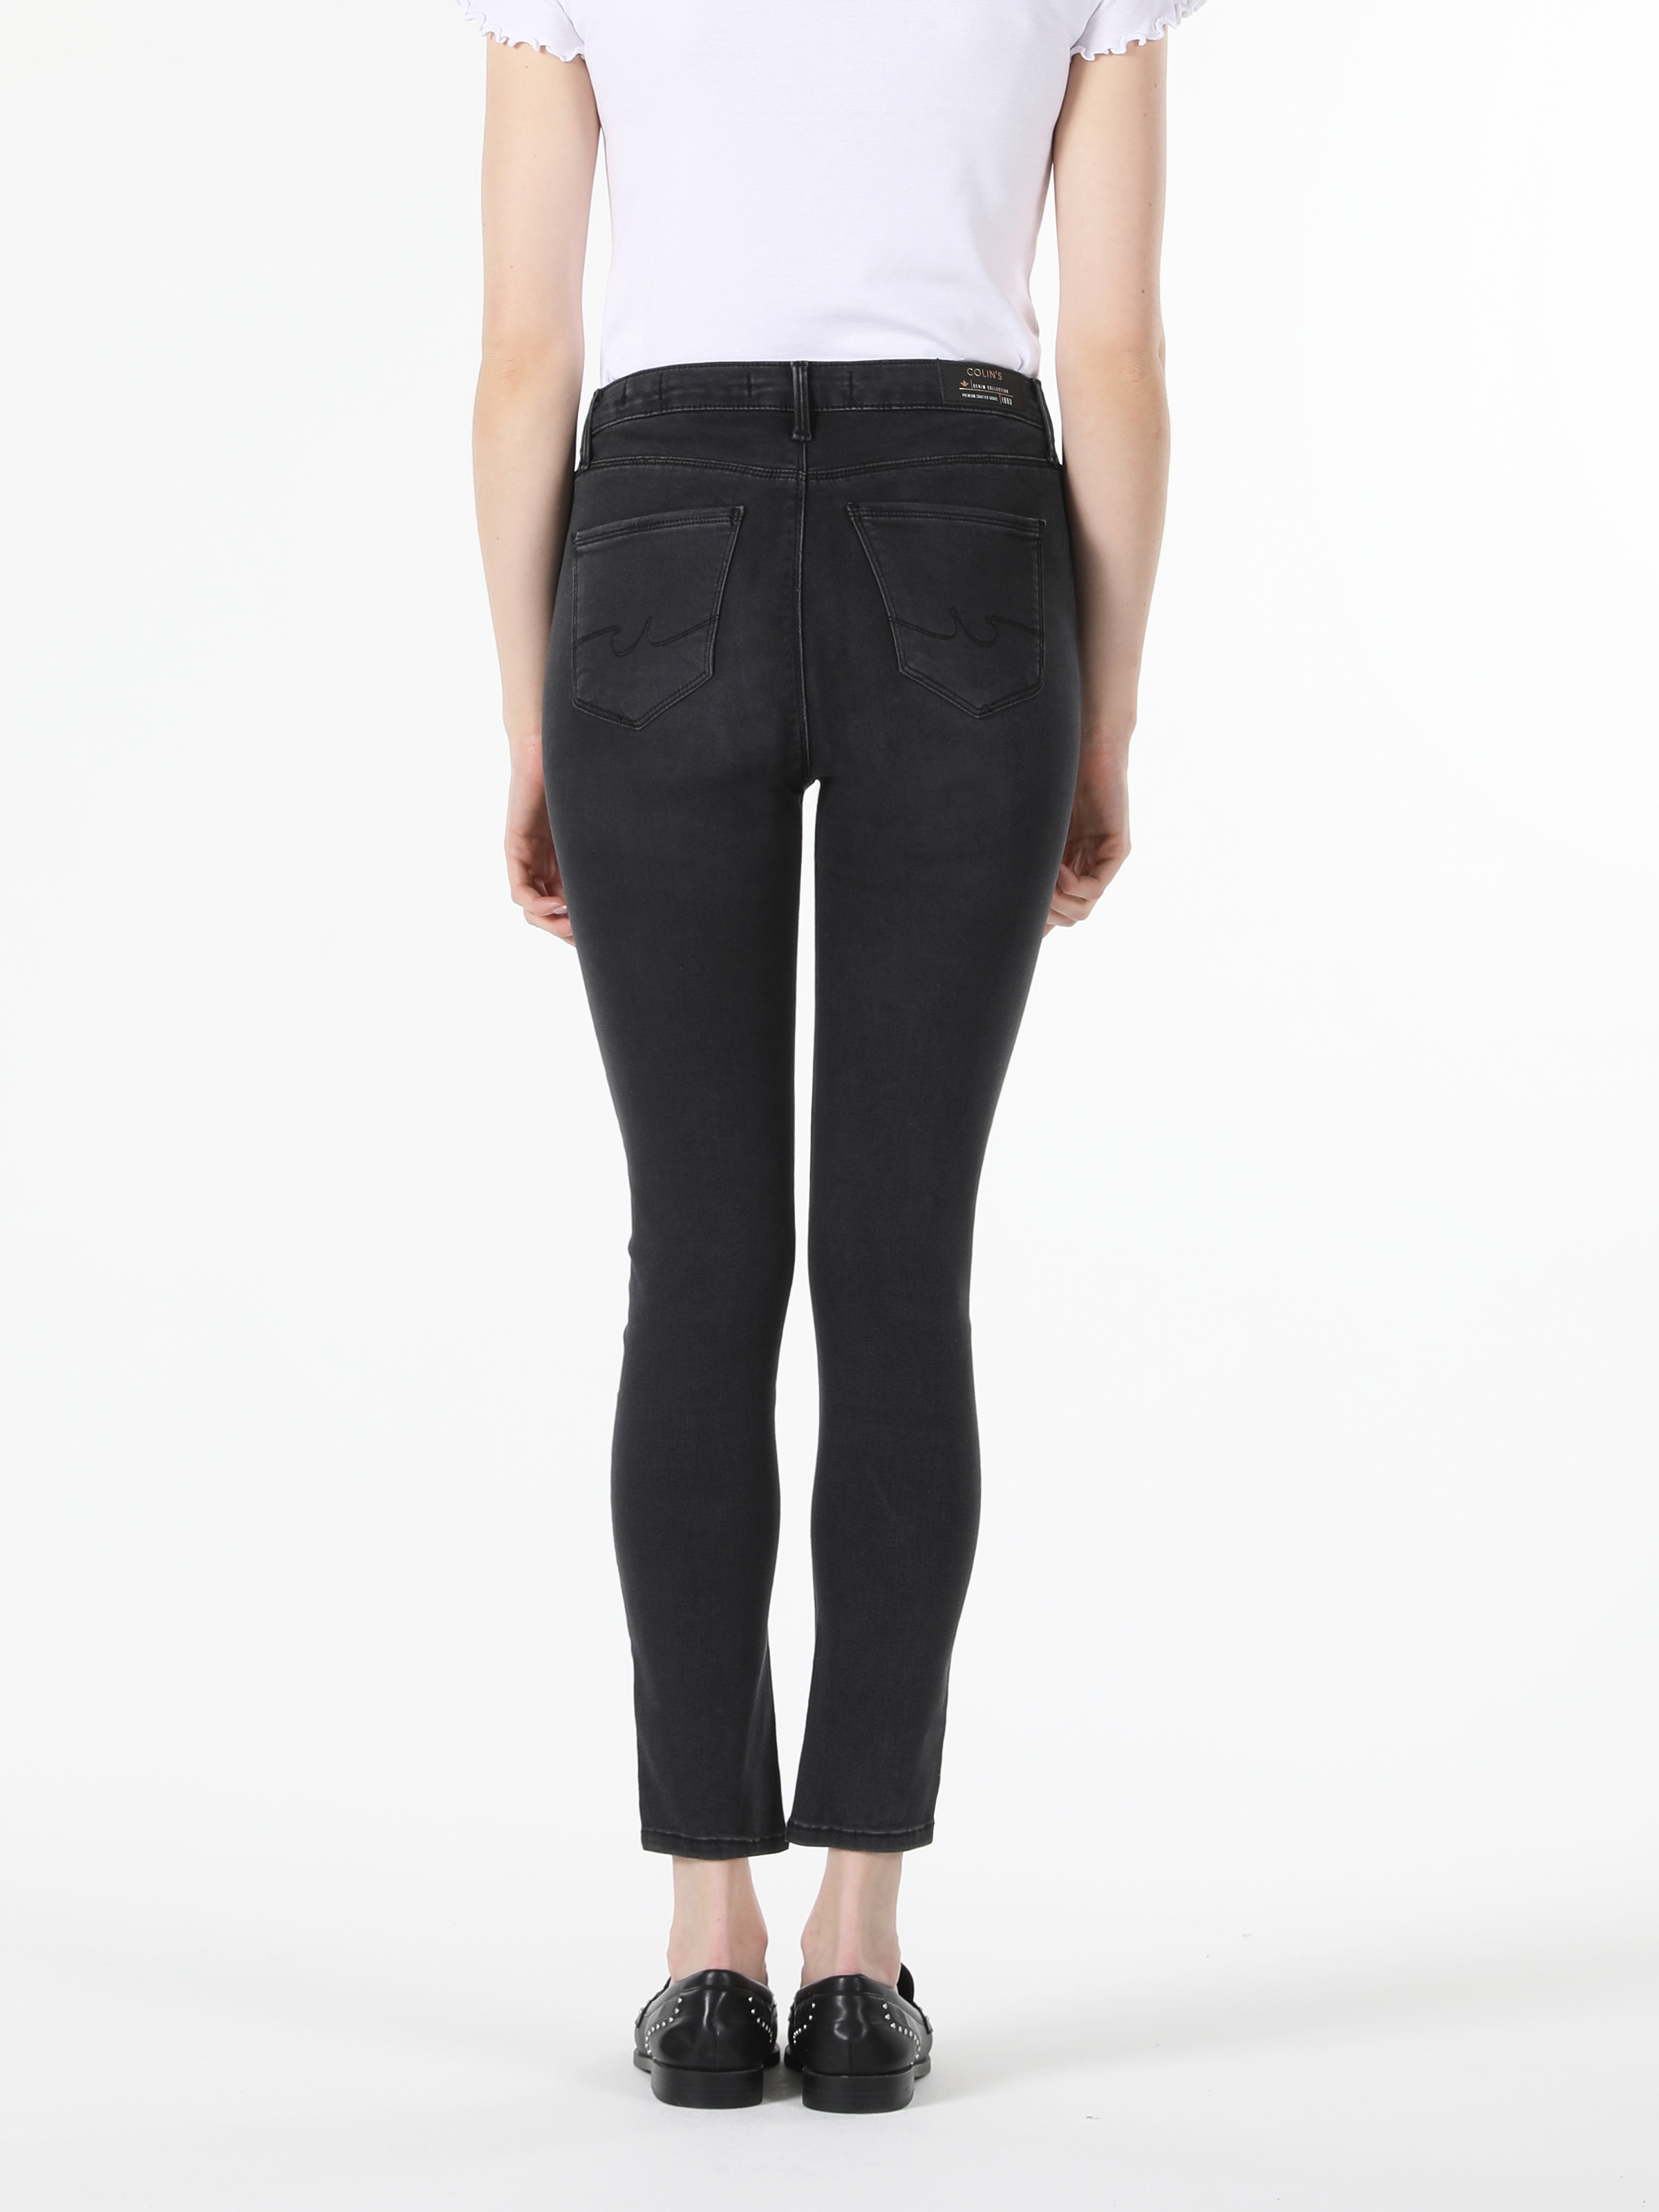 Afficher les détails de 759 Lara Pantalon En Jean Noir Taille Moyenne, Jambe Étroite, Coupe Super Slim Pour Femme